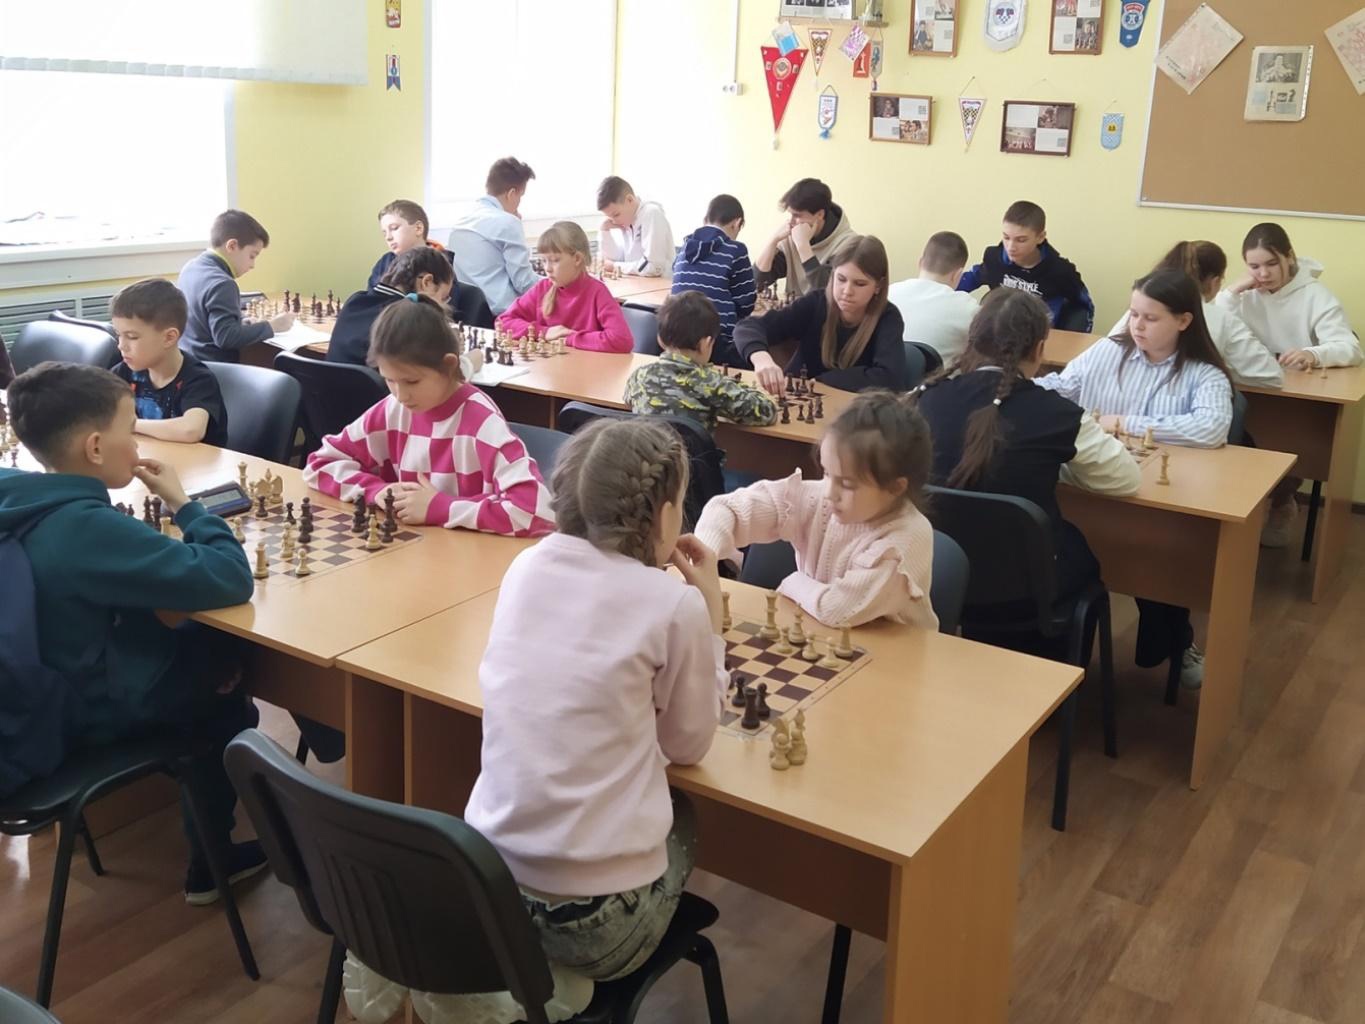 В Кинешме состоялся муниципальный этап Всероссийских соревнований по шахматам